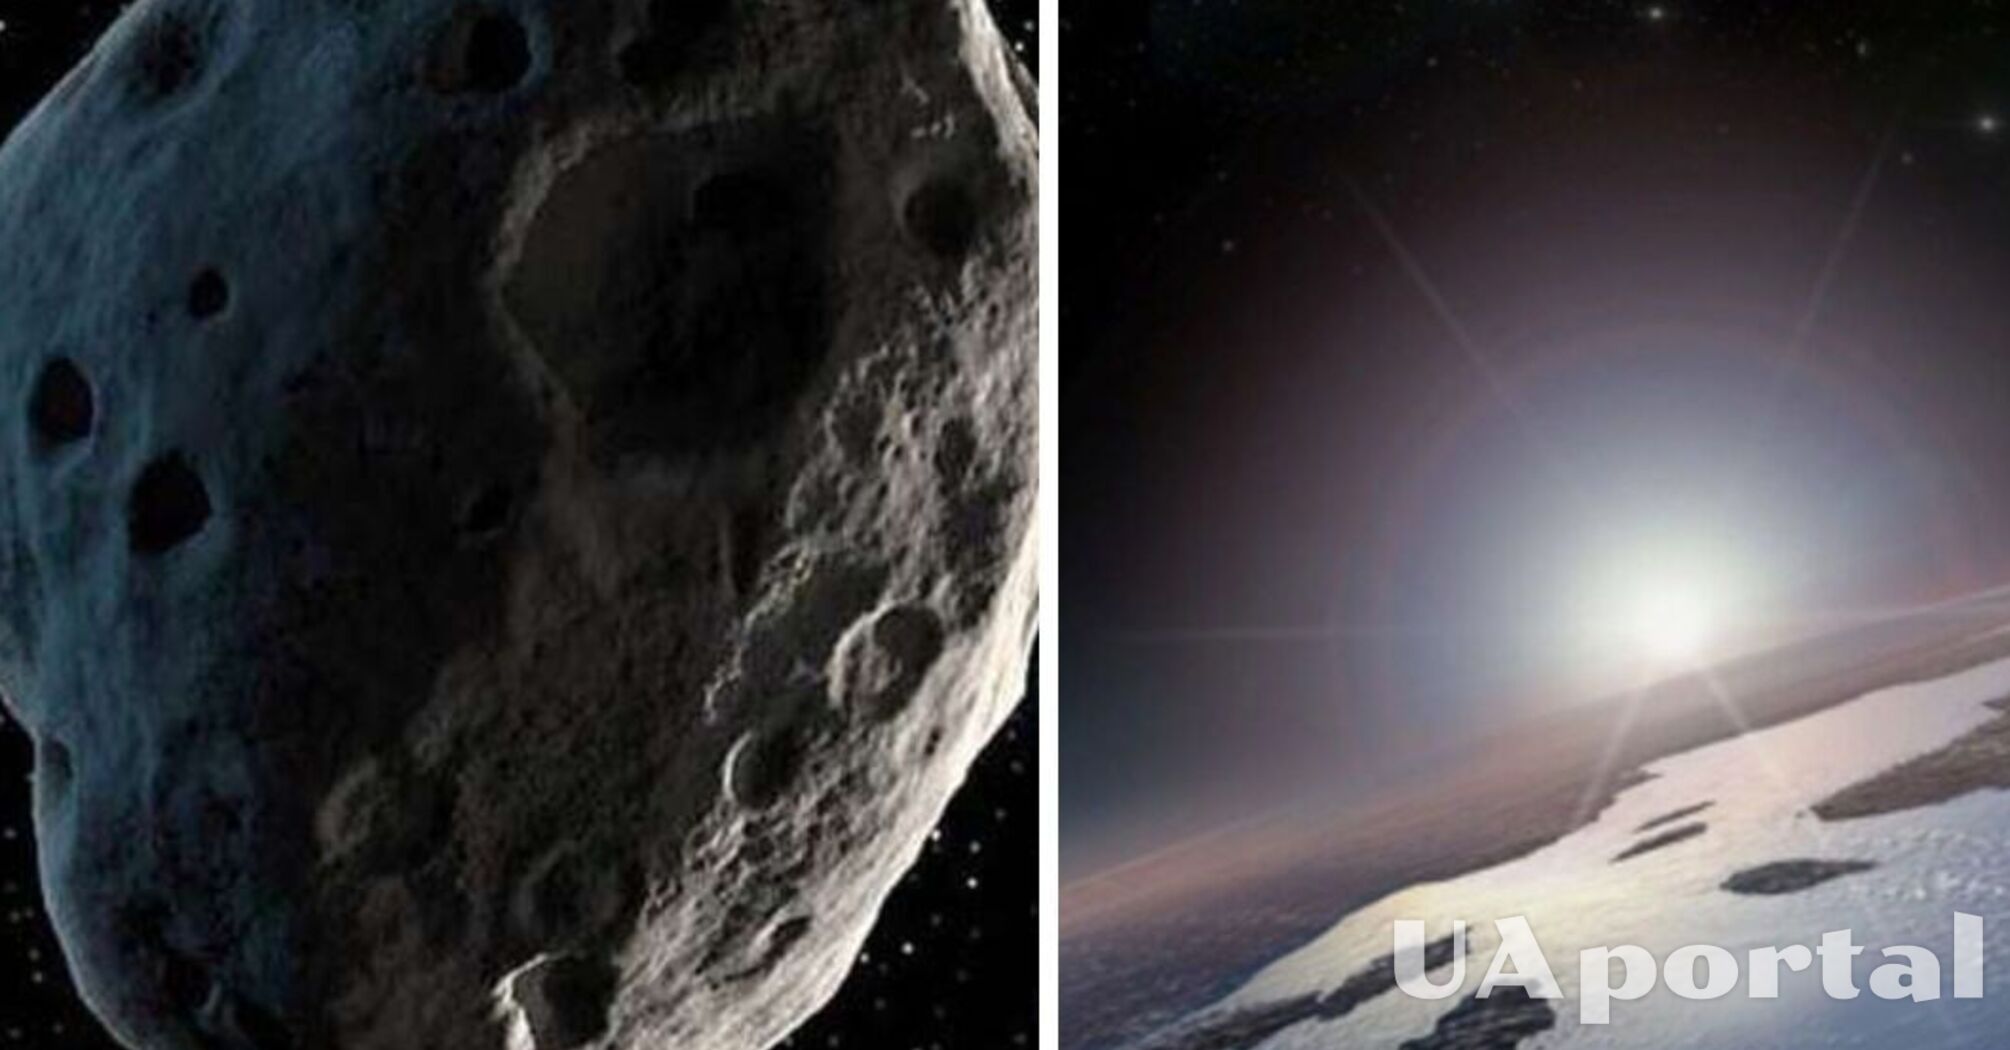 У NASA попередили про астероїд, який може зіткнутися з Землею у День закоханих: названа точна дата